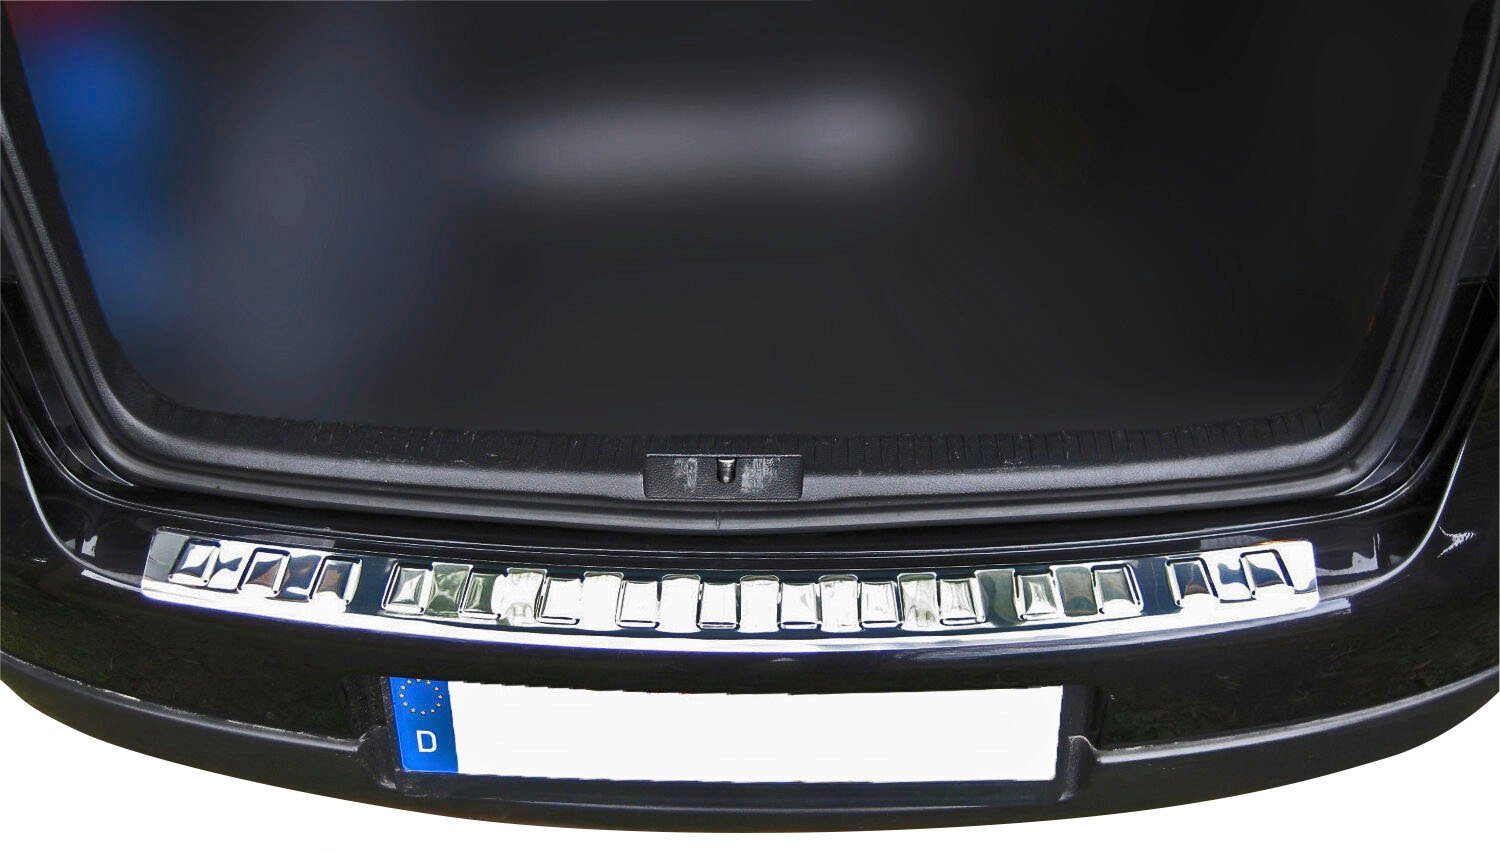 RECAMBO Ladekantenschutz, Zubehör für VW GOLF 5 LIMO, 2003-2008, Edelstahl  chrom poliert, mit Abkantung | Abdeckblenden